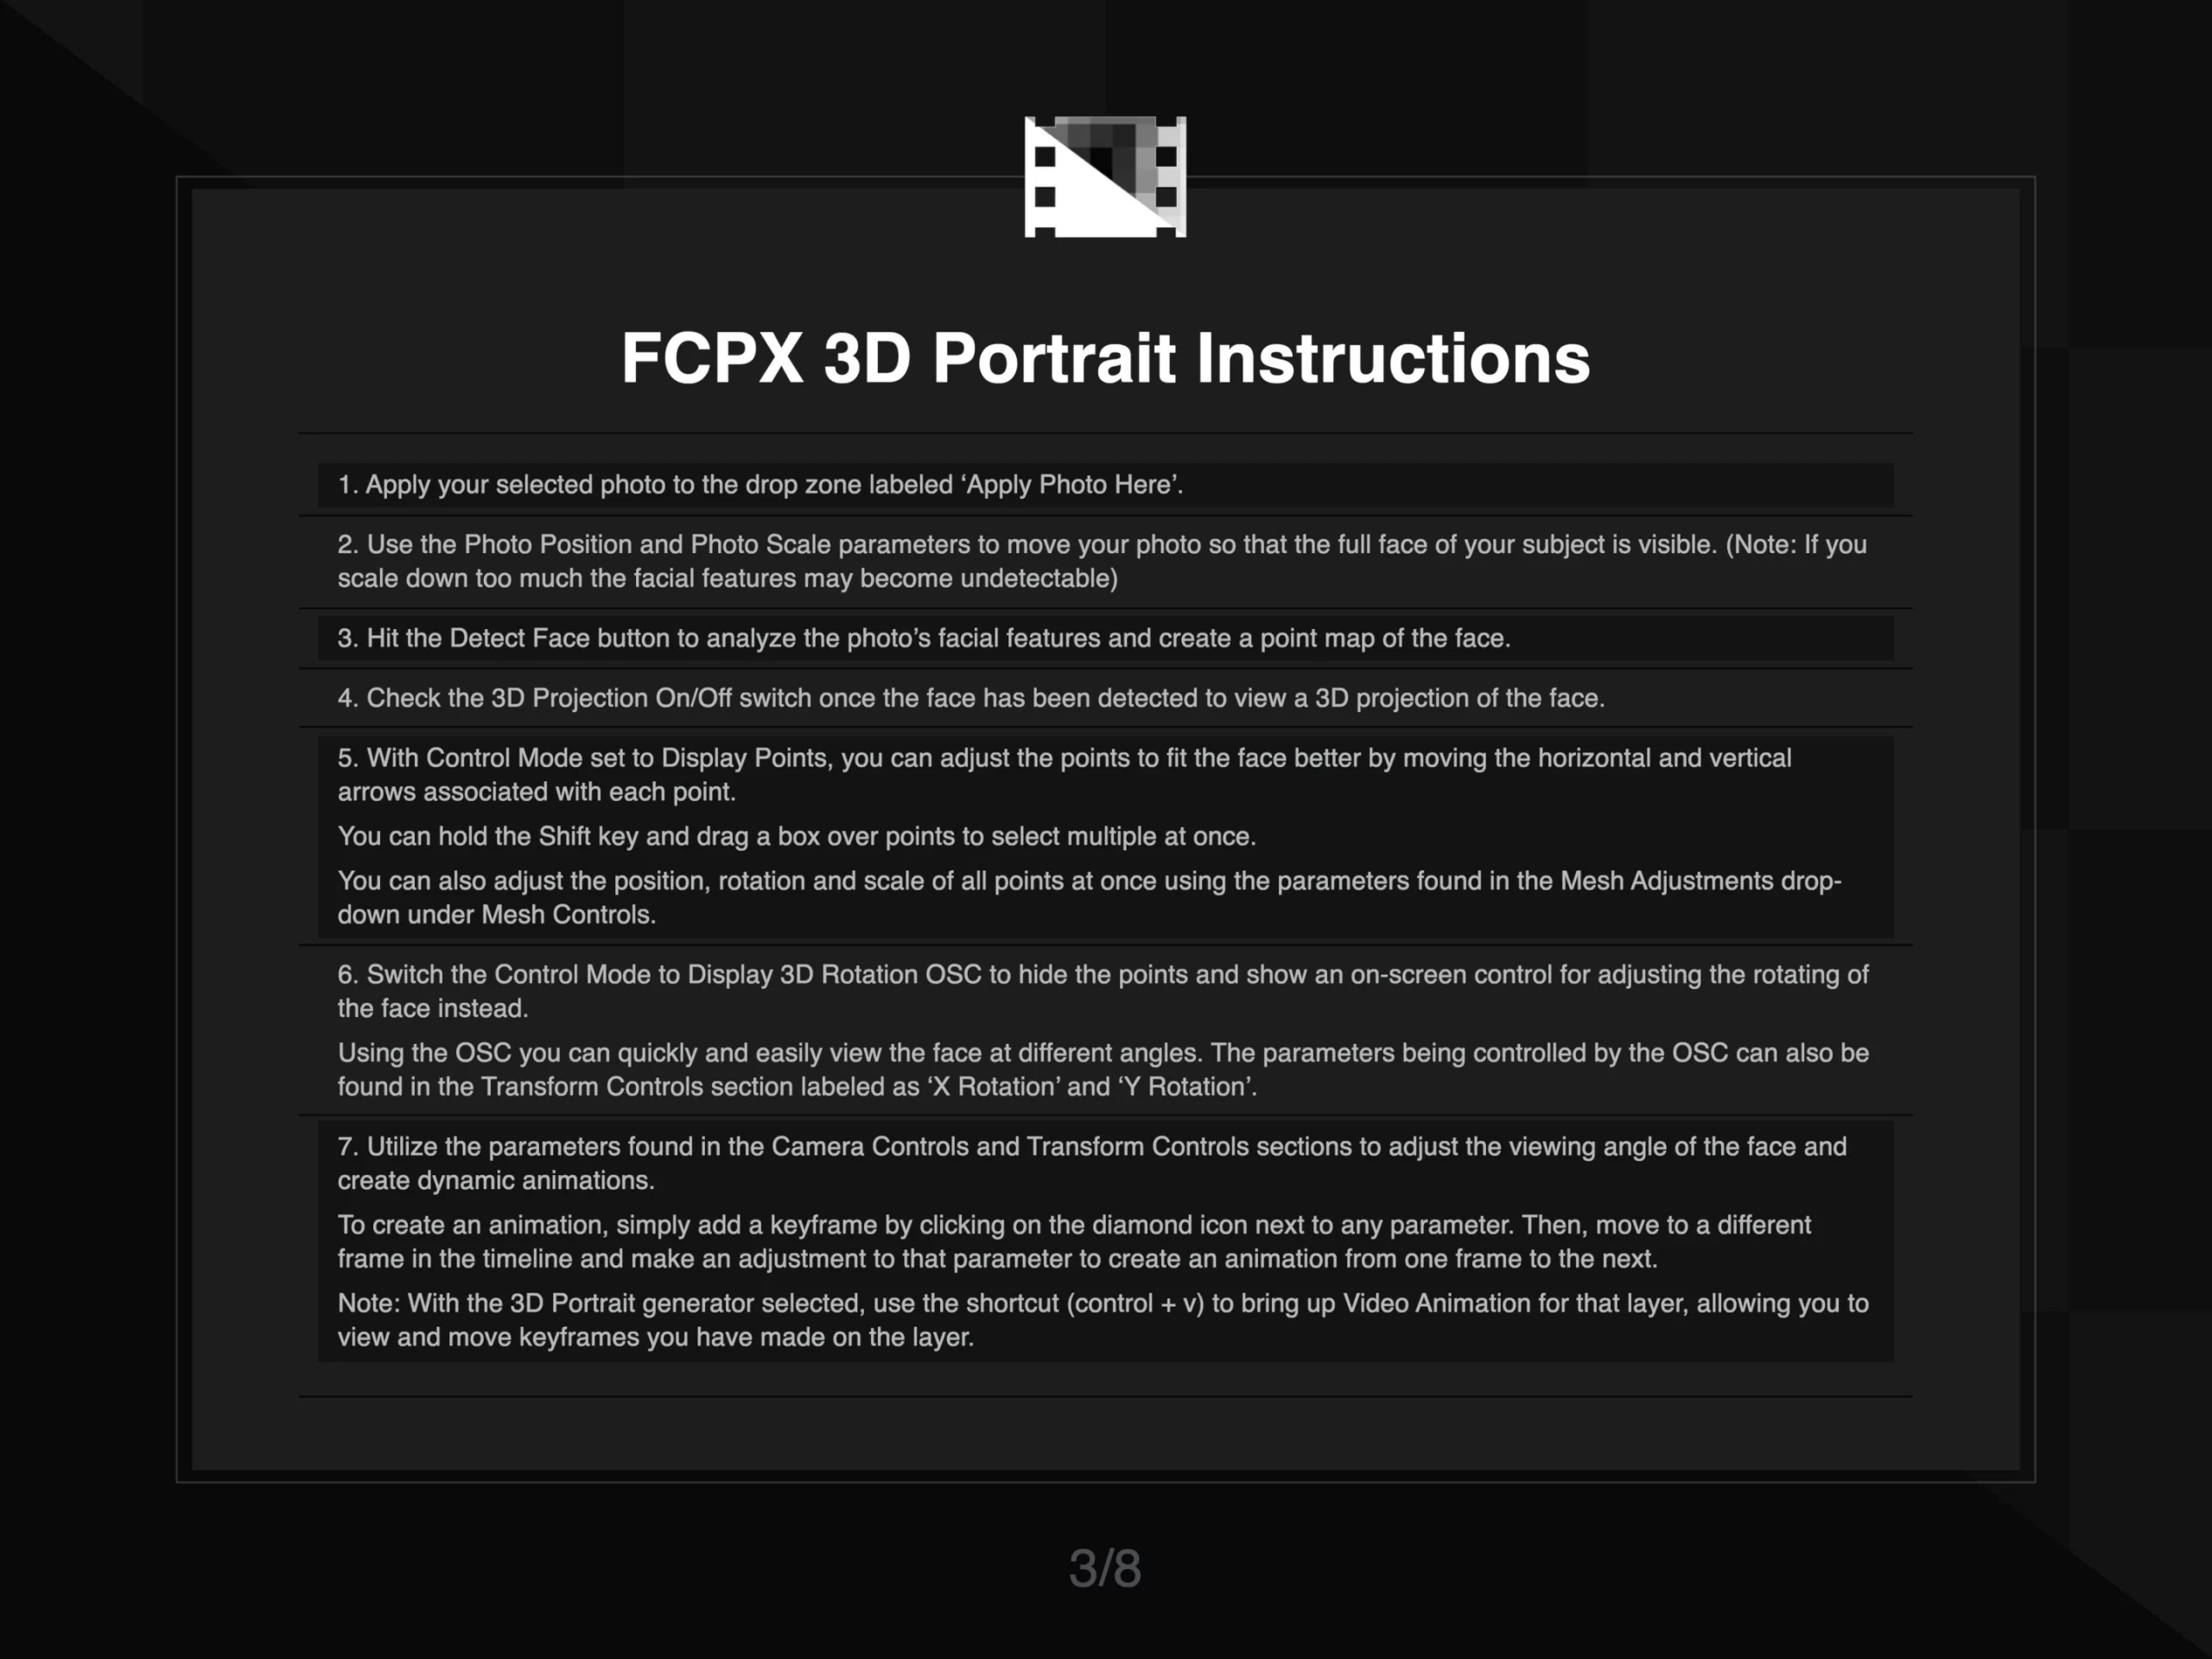 FCPX 3D Portrait Instruction 3 of 8